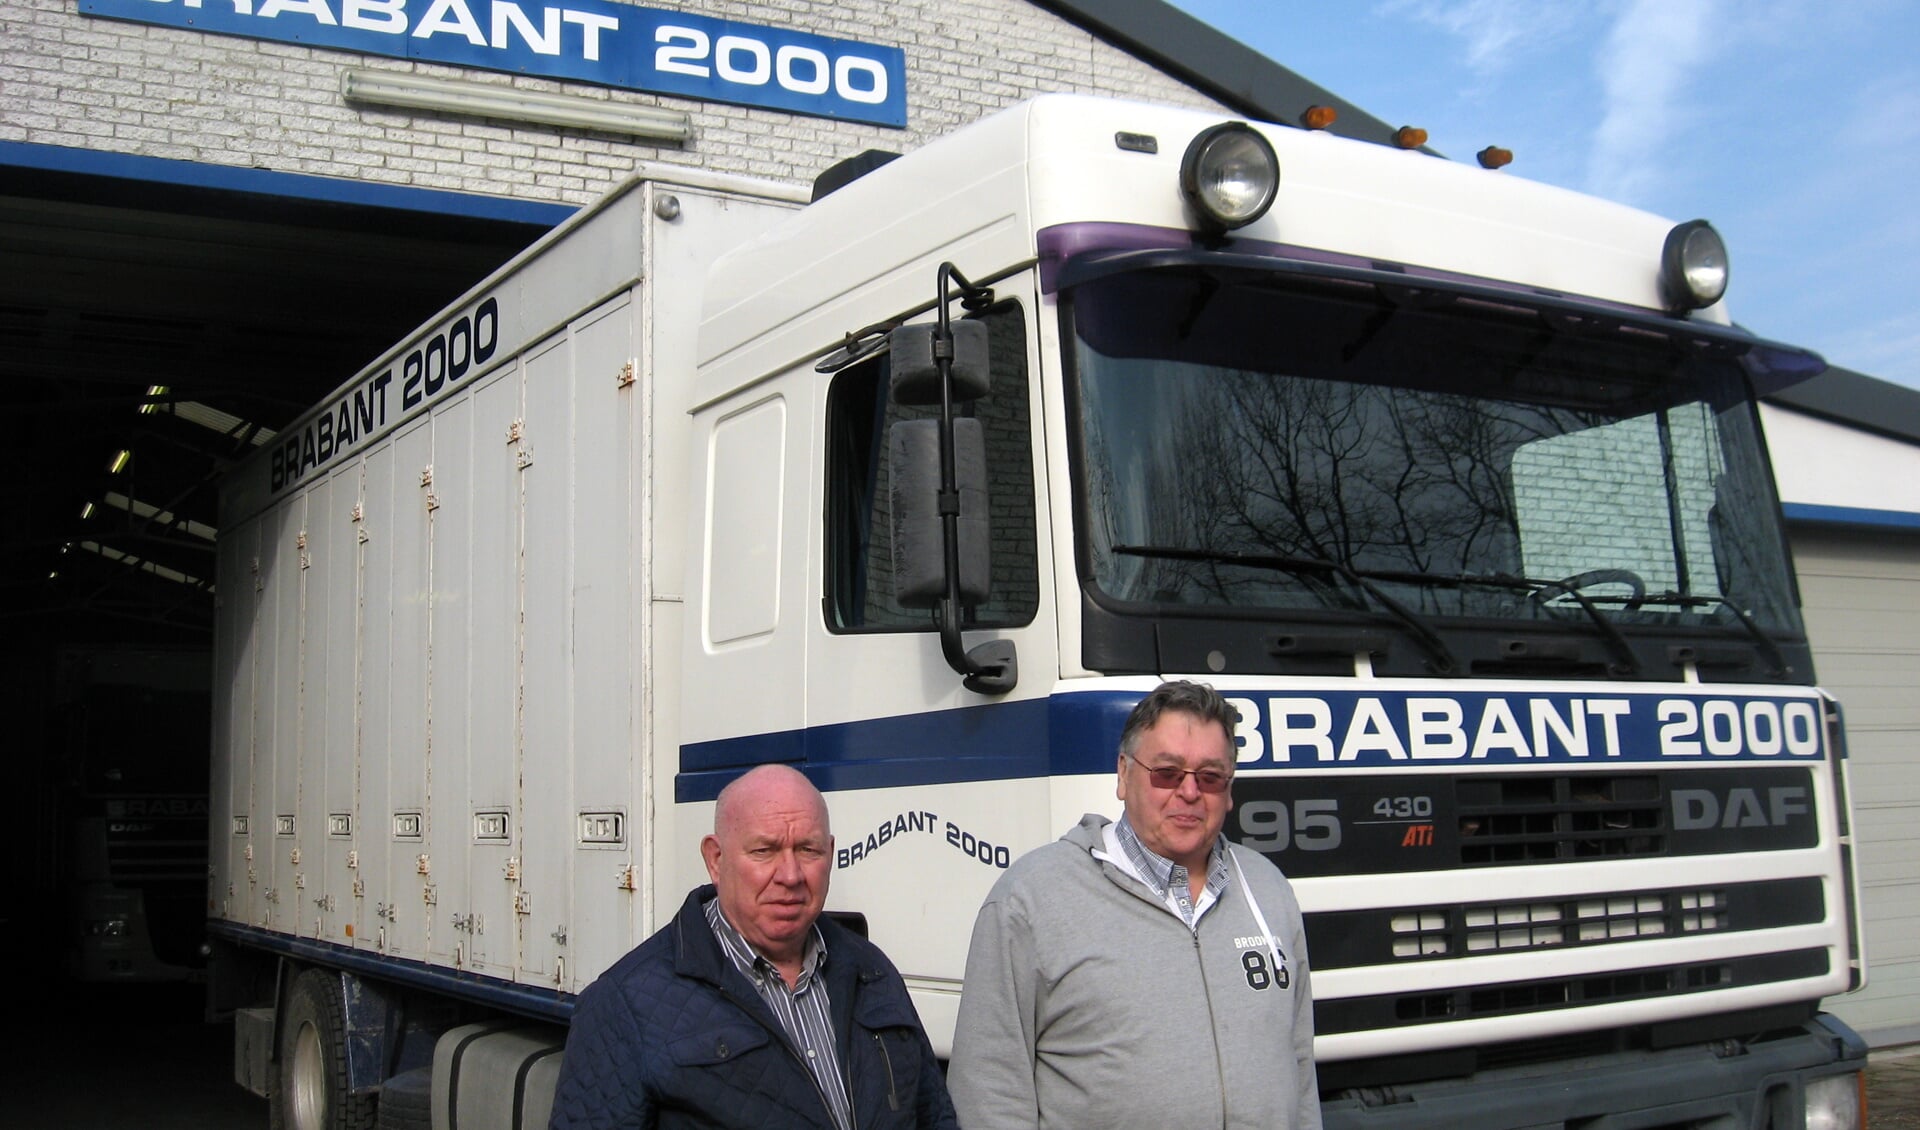 De bestuursleden Christ van der Linden (links) en Kees Godschalk bij de vrachtwagenloods in Rucphen. FOTO JOS OONINCX